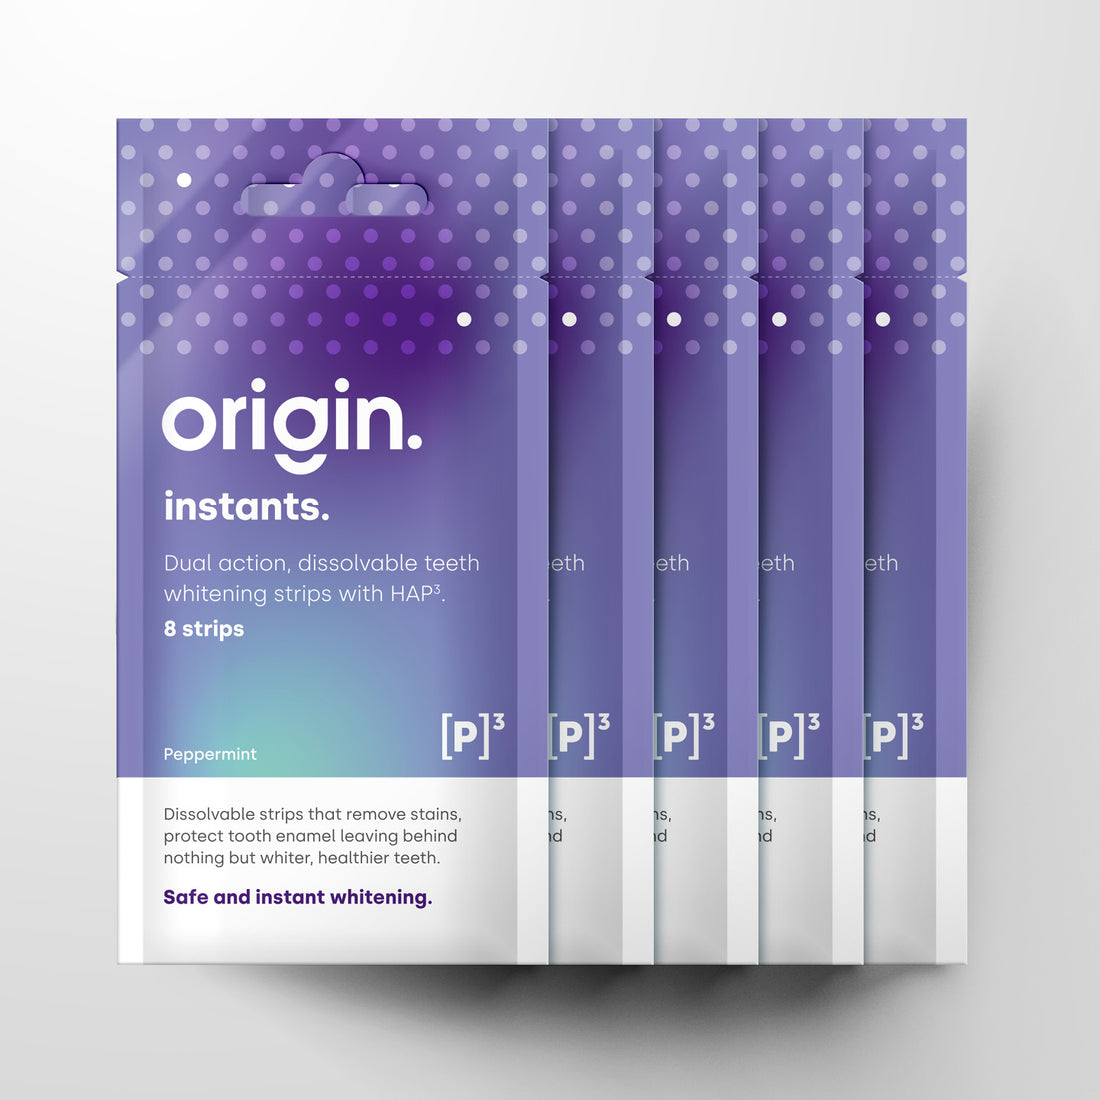 Origin instants 5 pack bundle